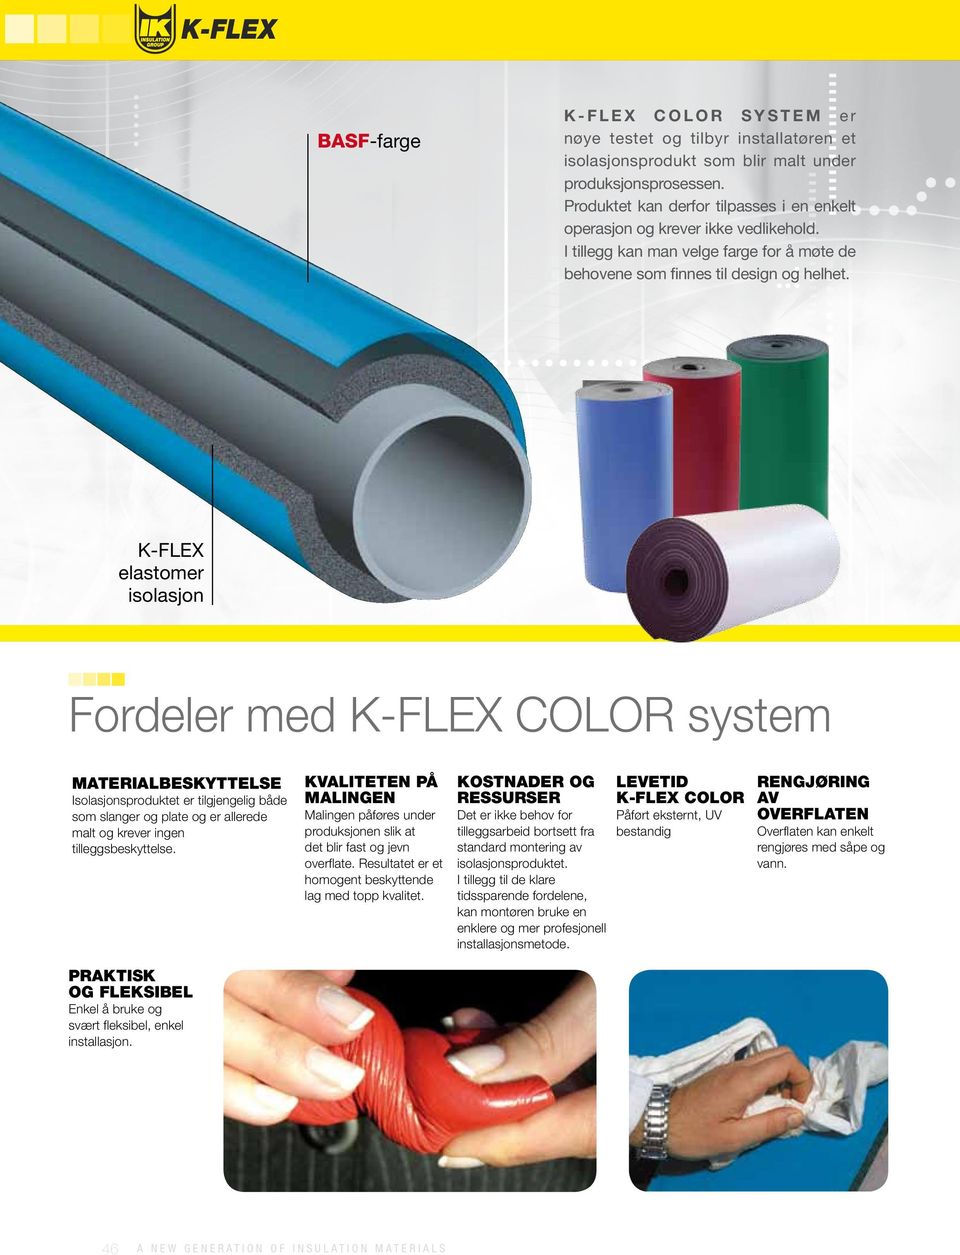 k-flex elastomer isolasjon Fordeler med K-FLEX COLOR system MATERIALBESKYTTELSE Isolasjonsproduktet er tilgjengelig både som slanger og plate og er allerede malt og krever ingen tilleggsbeskyttelse.